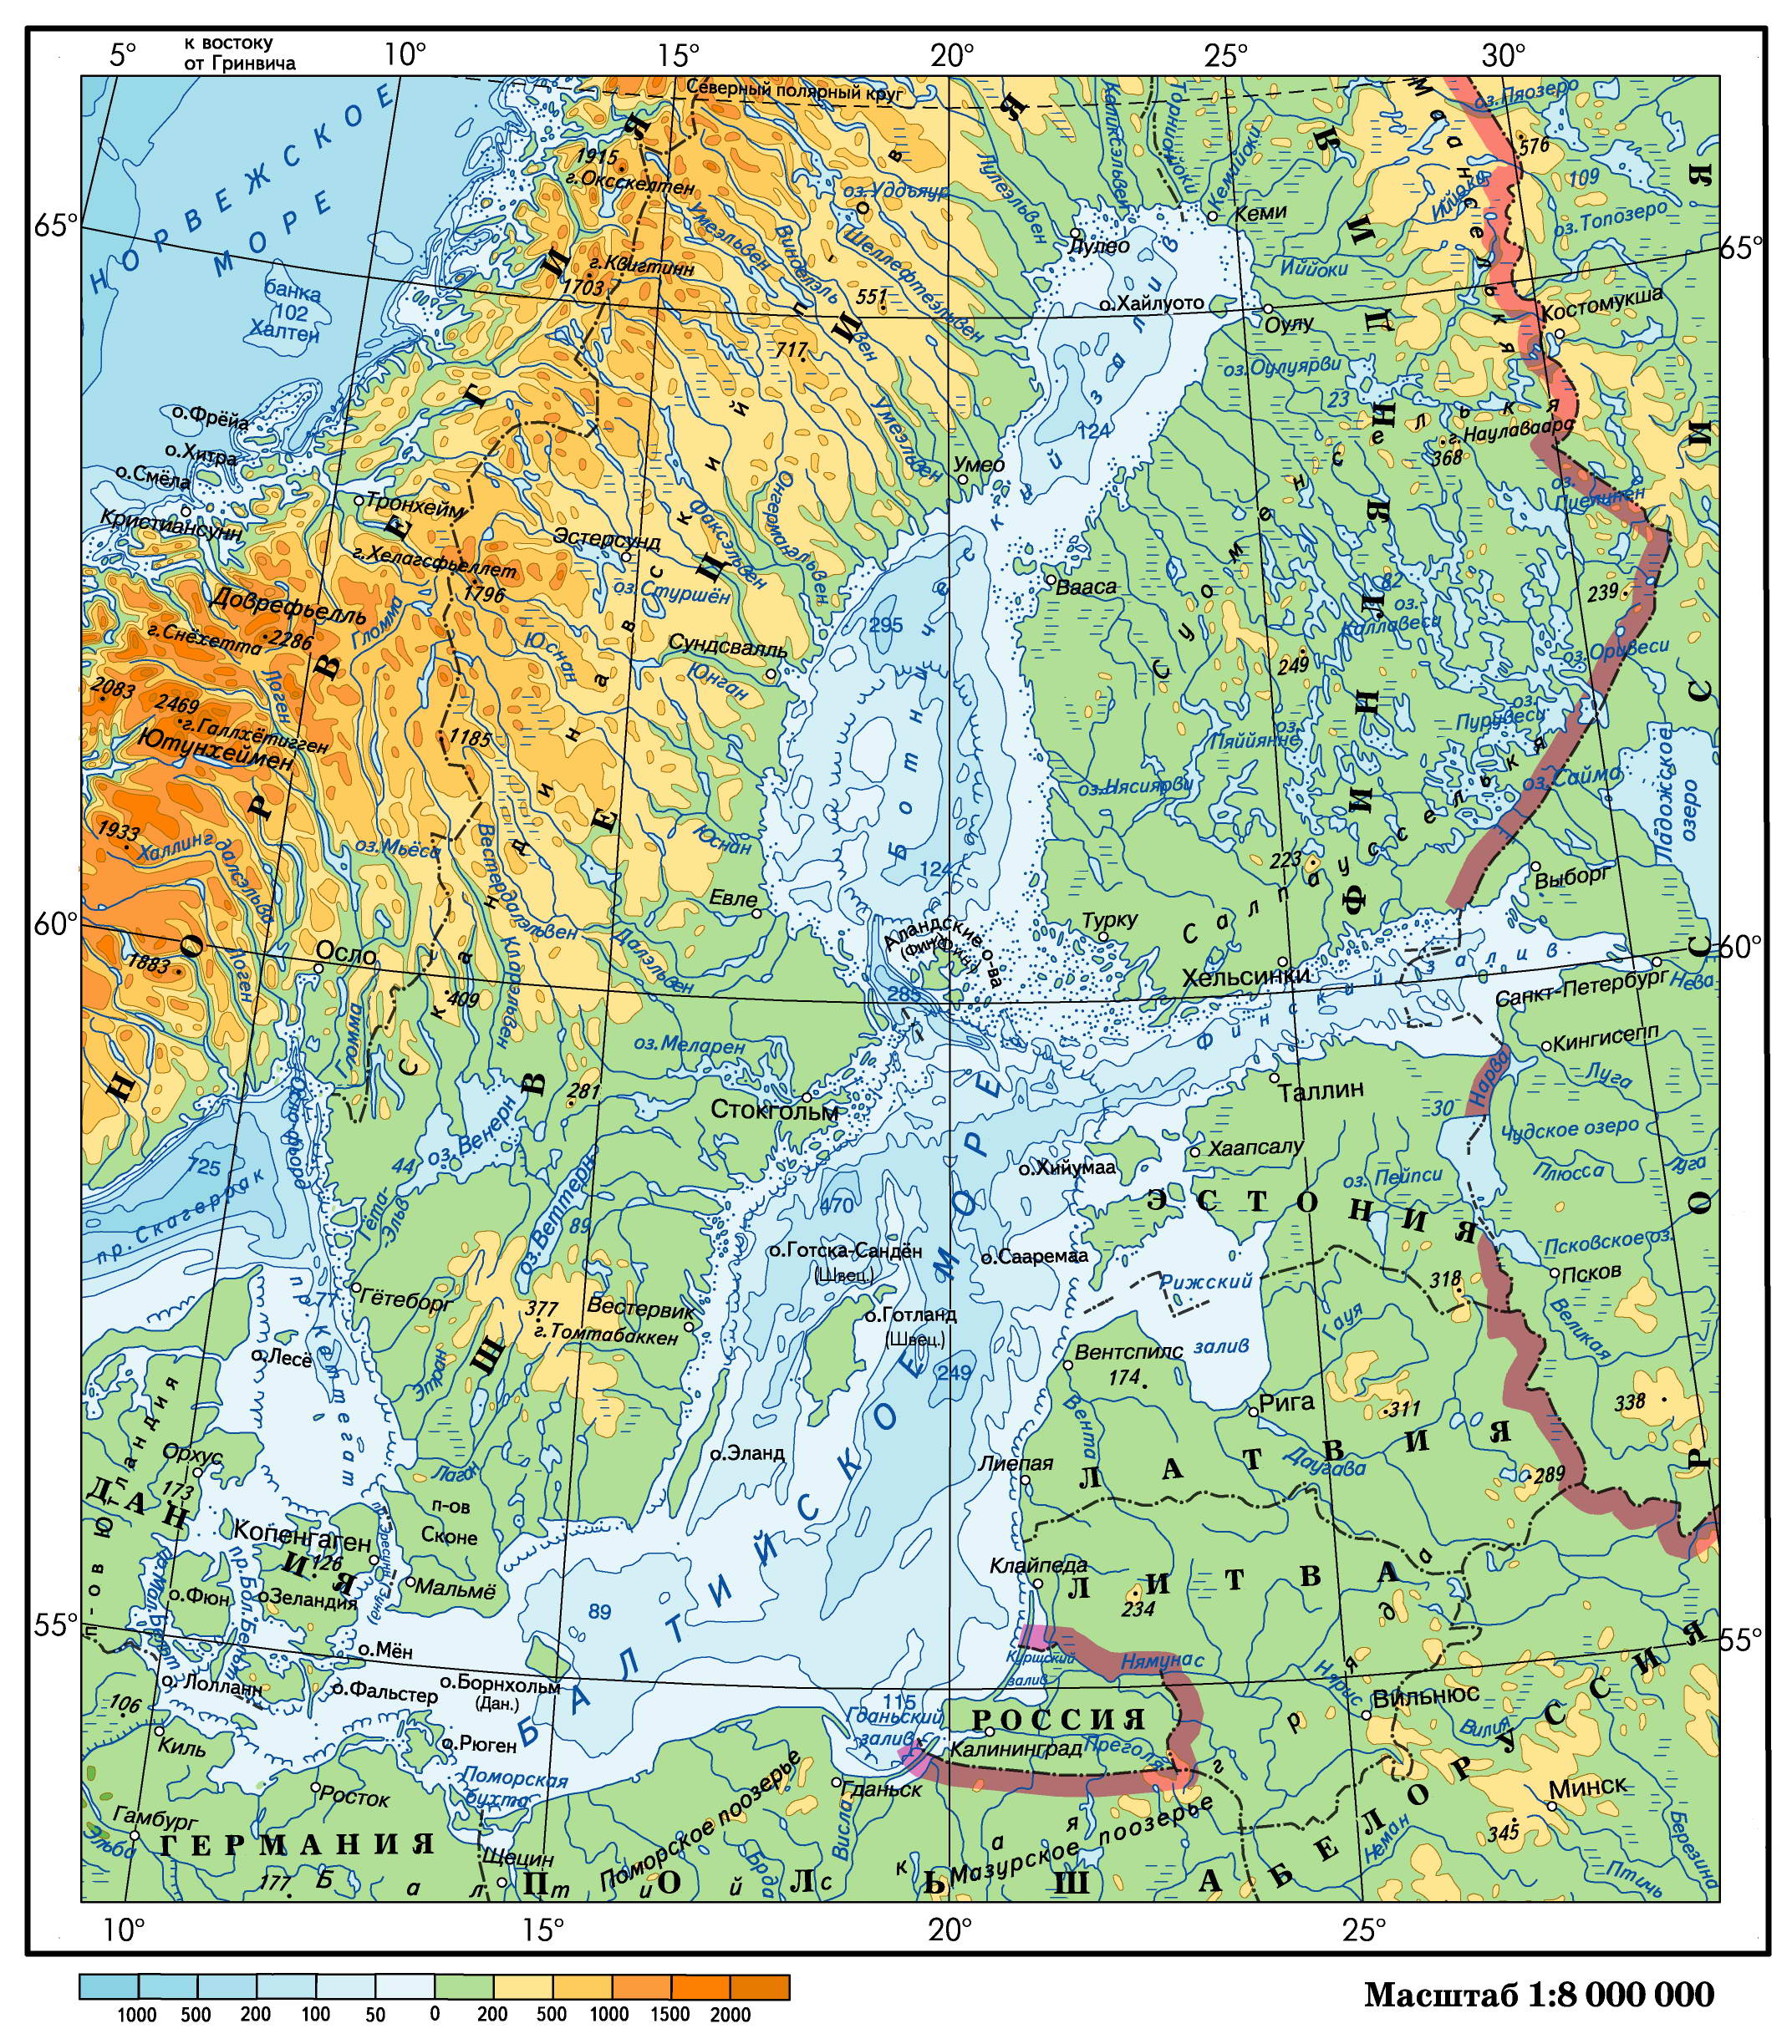 Моря России — Балтийское море